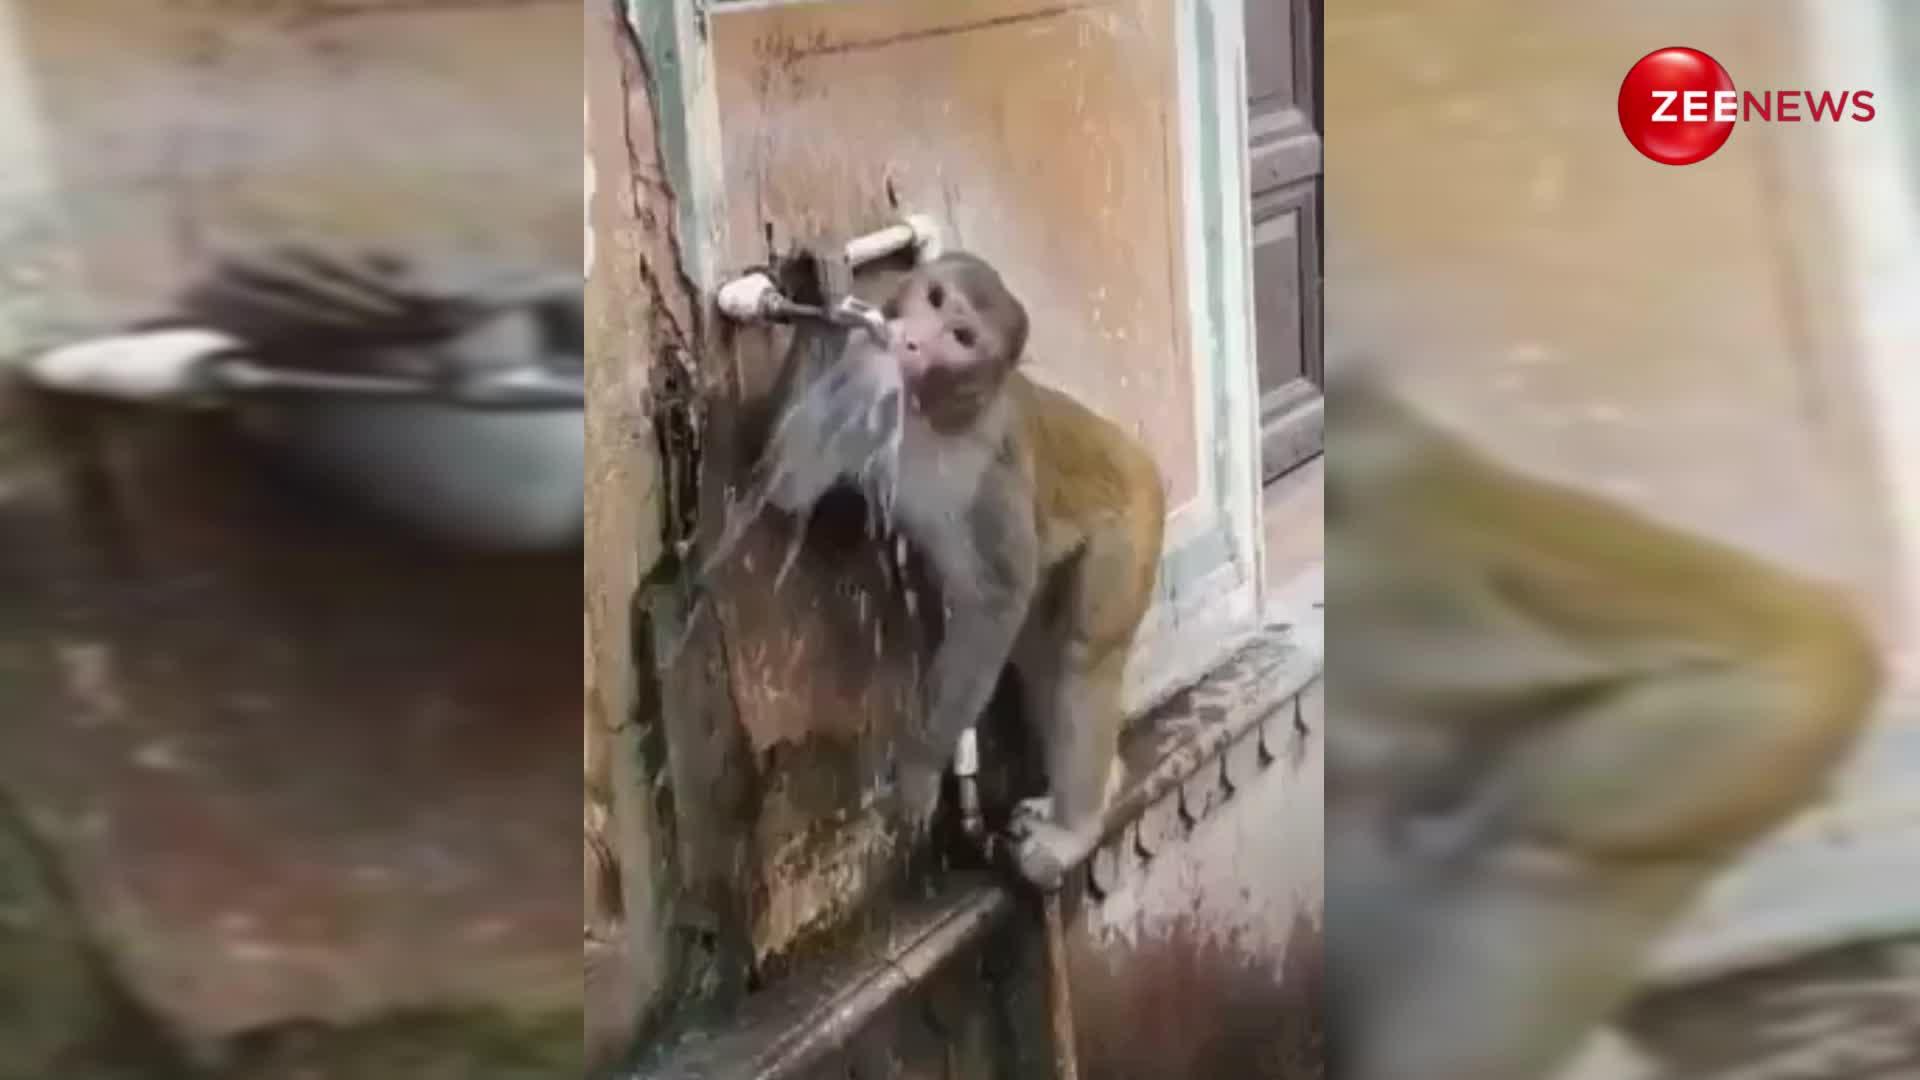 प्यास लगी तो नल से पानी पीने पहुंचा 'सयाना बंदर', फिर दिखाई ऐसी समझदारी वाहवाही करने लगे लोग